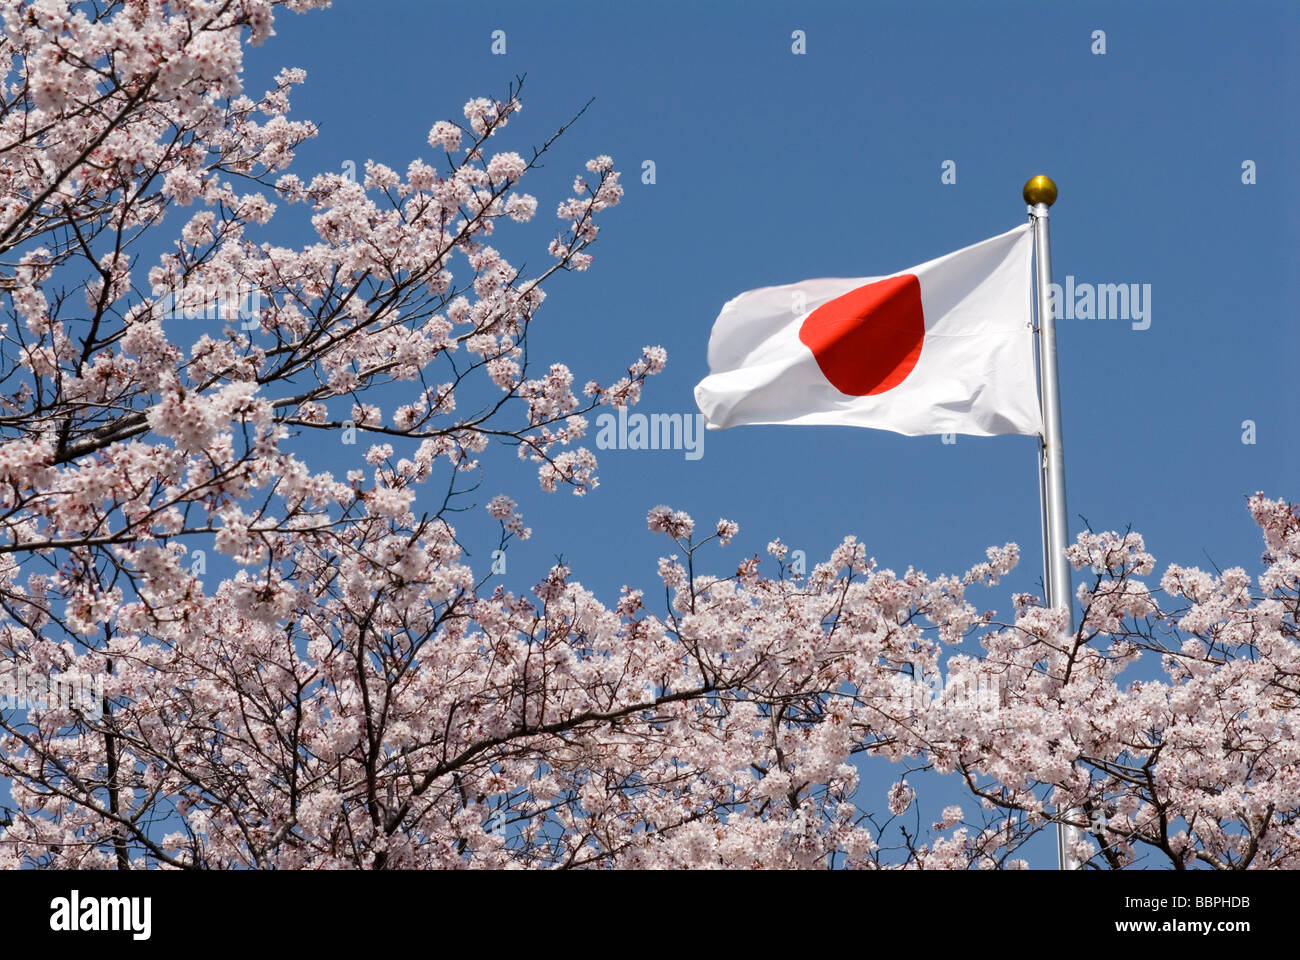 Le hinomaru, ou drapeau national du Japon, est entouré de cerisiers en fleurs Banque D'Images